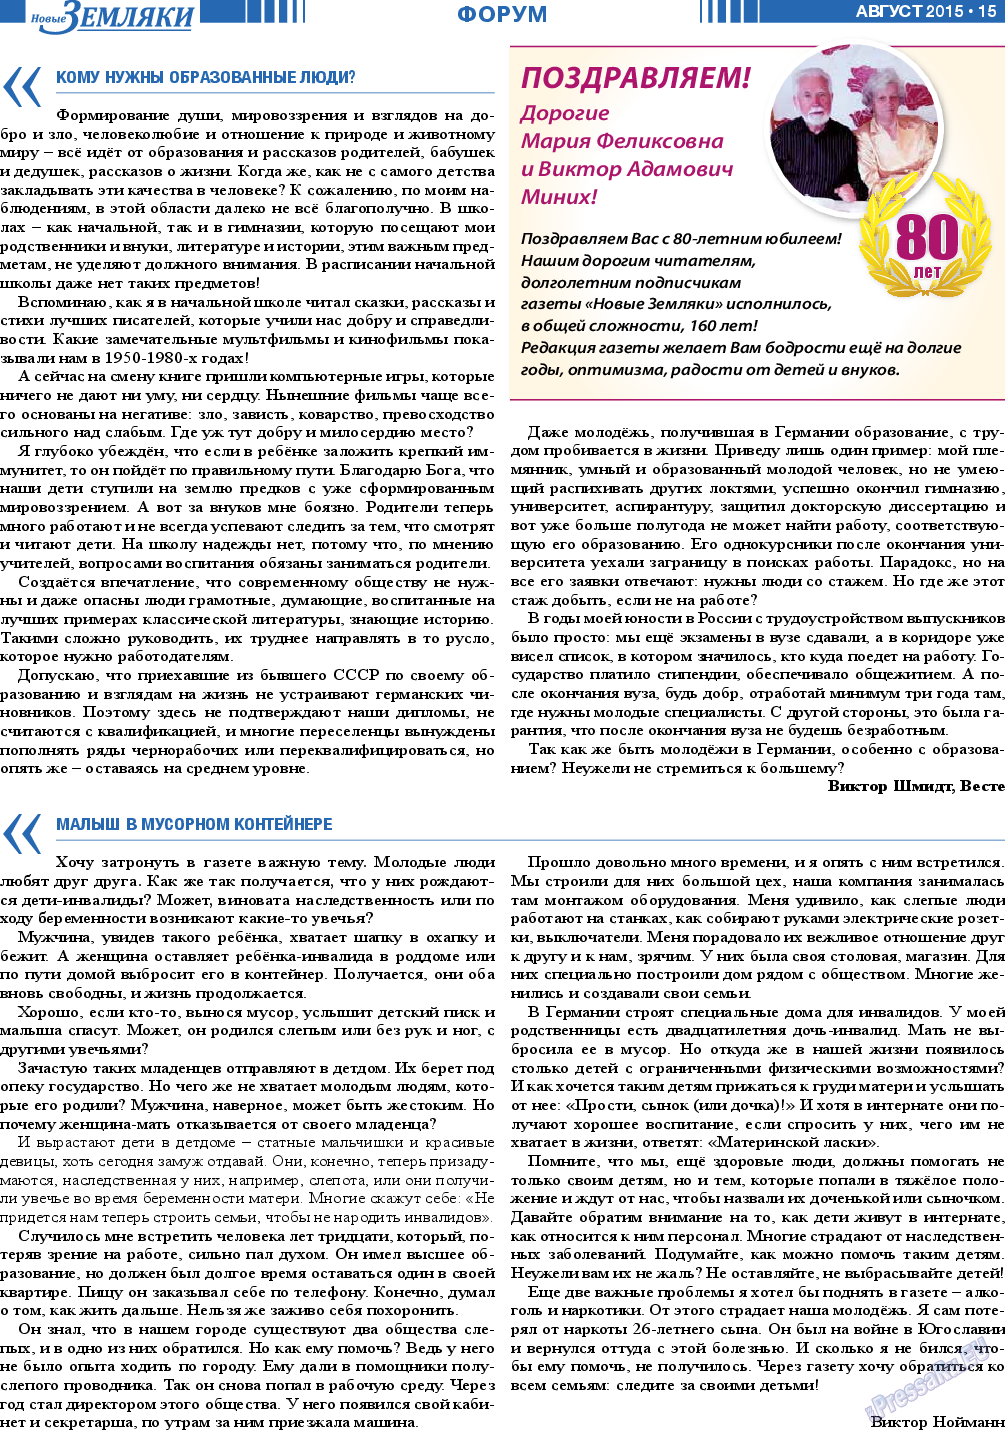 Новые Земляки, газета. 2015 №8 стр.15